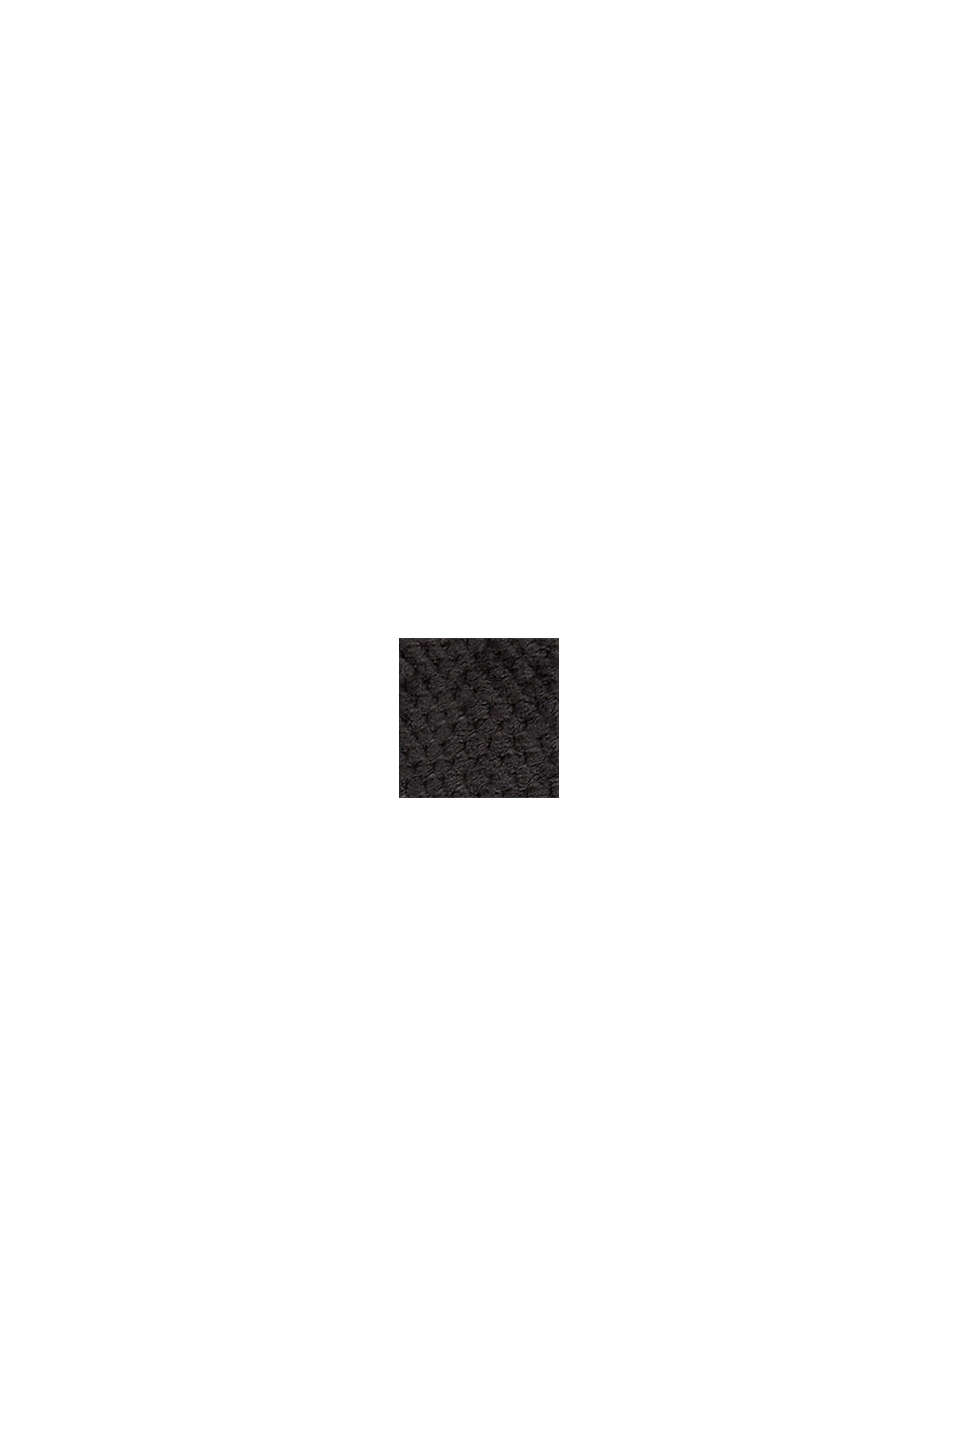 Měkká domácí mikina s rolákovým límcem, BLACK, swatch